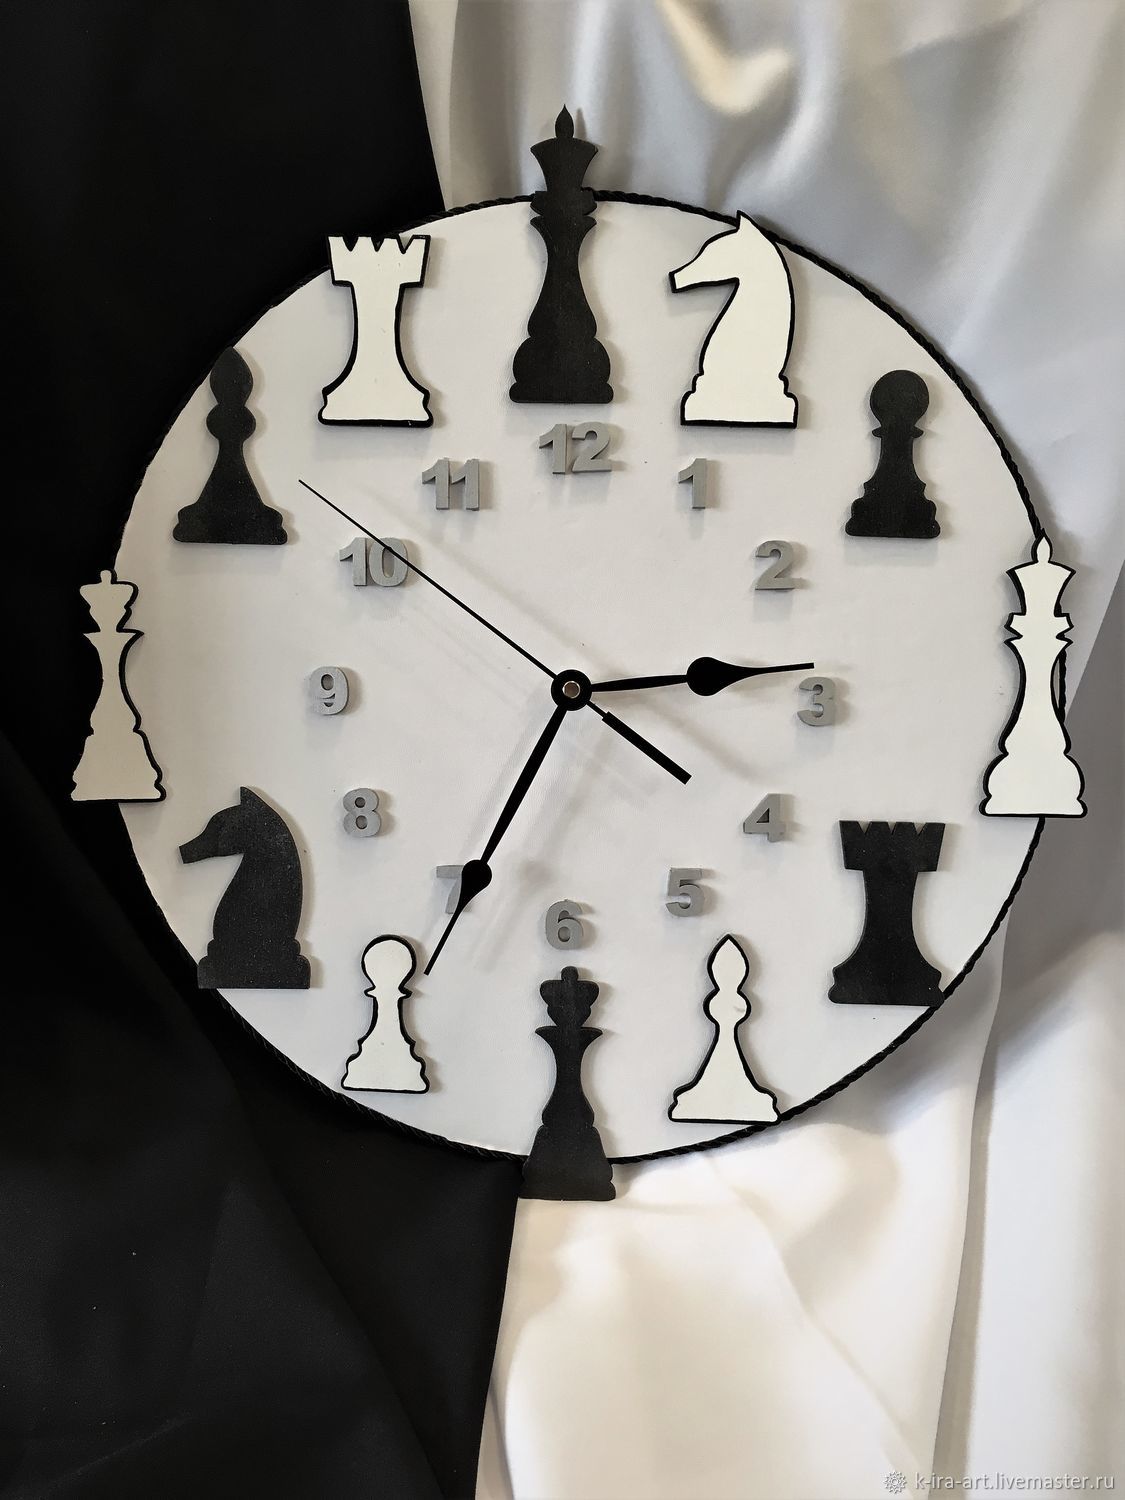 Количество циферблатов в шахматных часах. Настенные шахматные часы. Часы в стиле шахмат. Часы в шахматном стиле. Настенные часы шахматная доска.